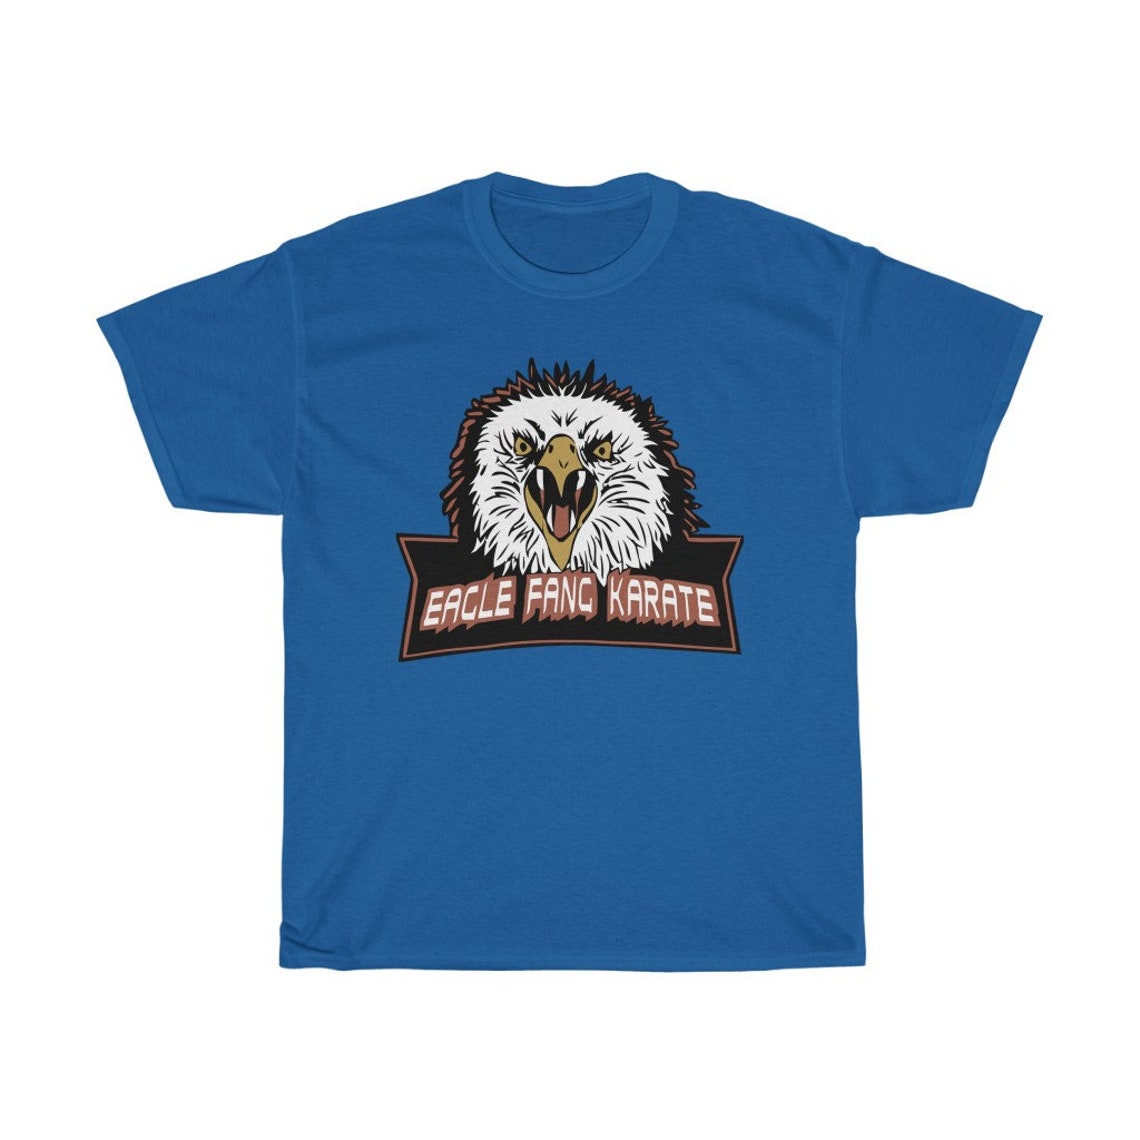 Eagle fang karate T-Shirt eagle fang karate logo eagle fang | Etsy